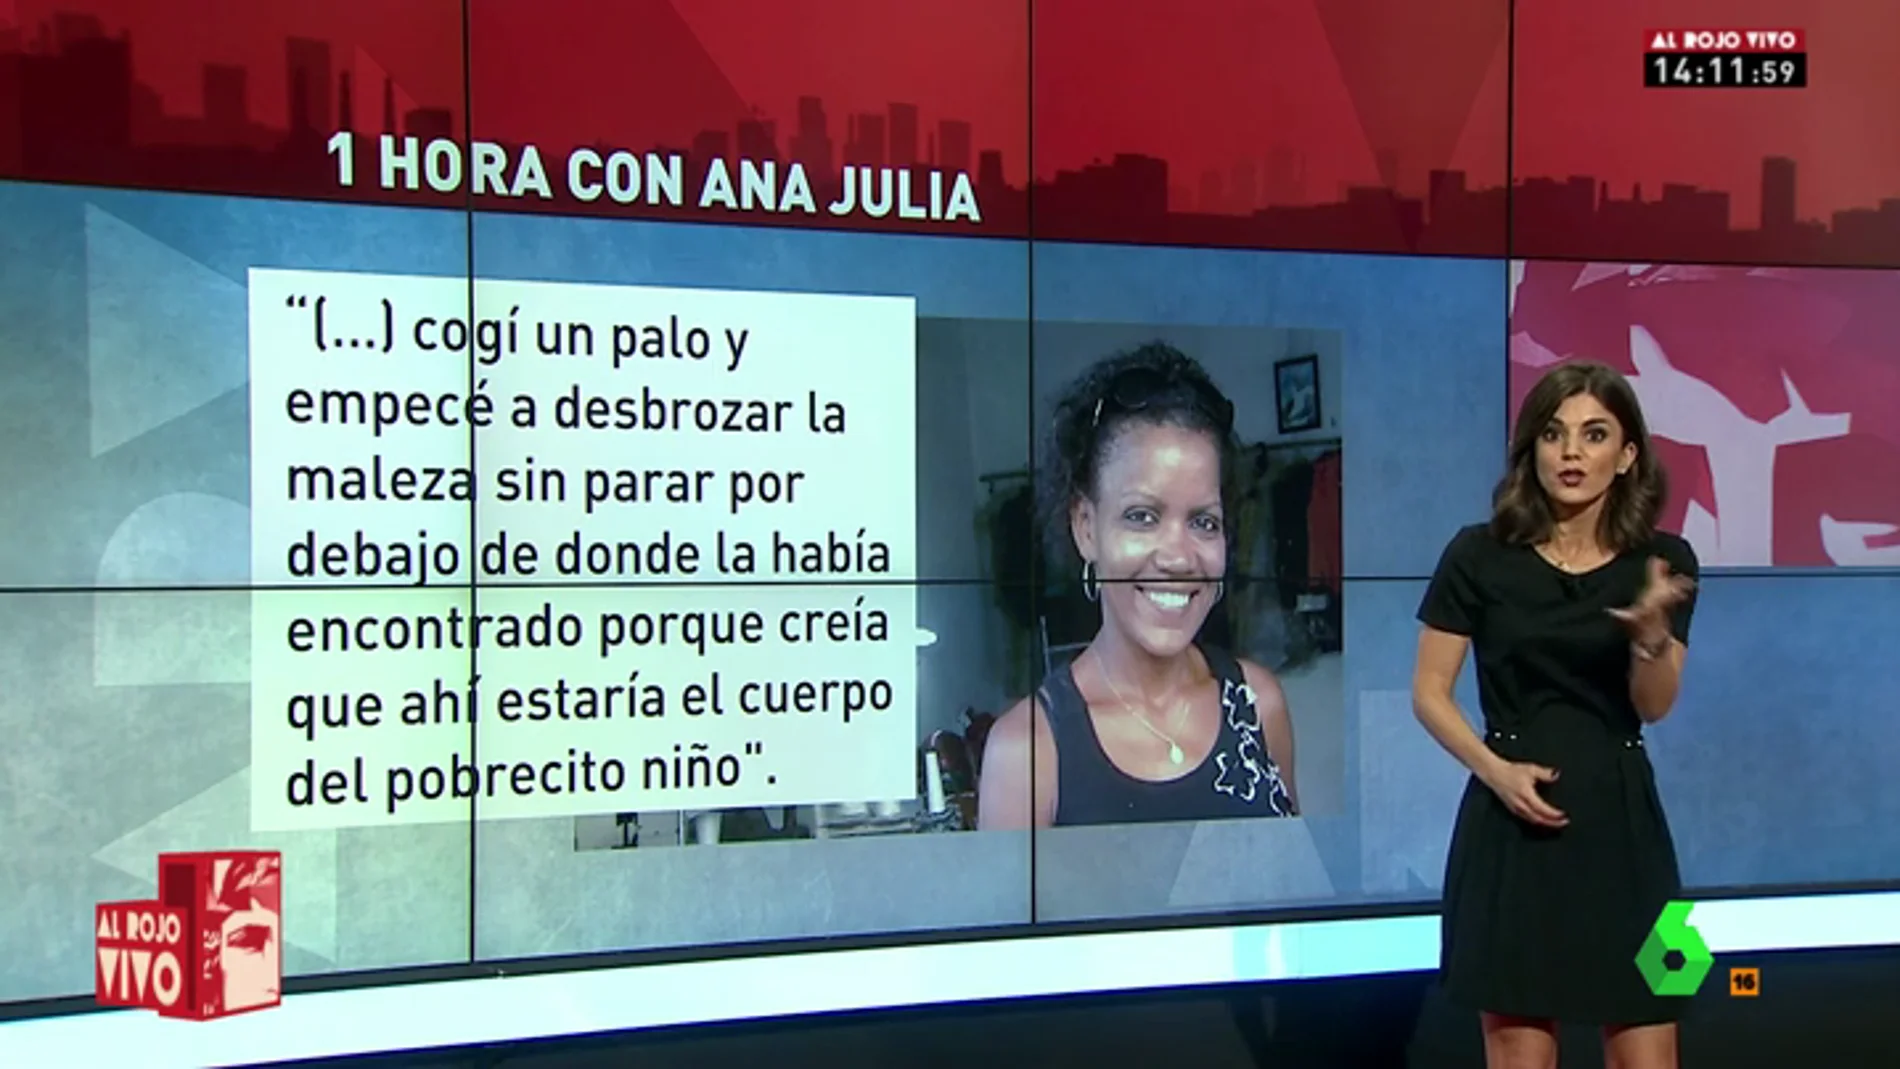 La conversación de Manel Vilaseró con Ana Julia